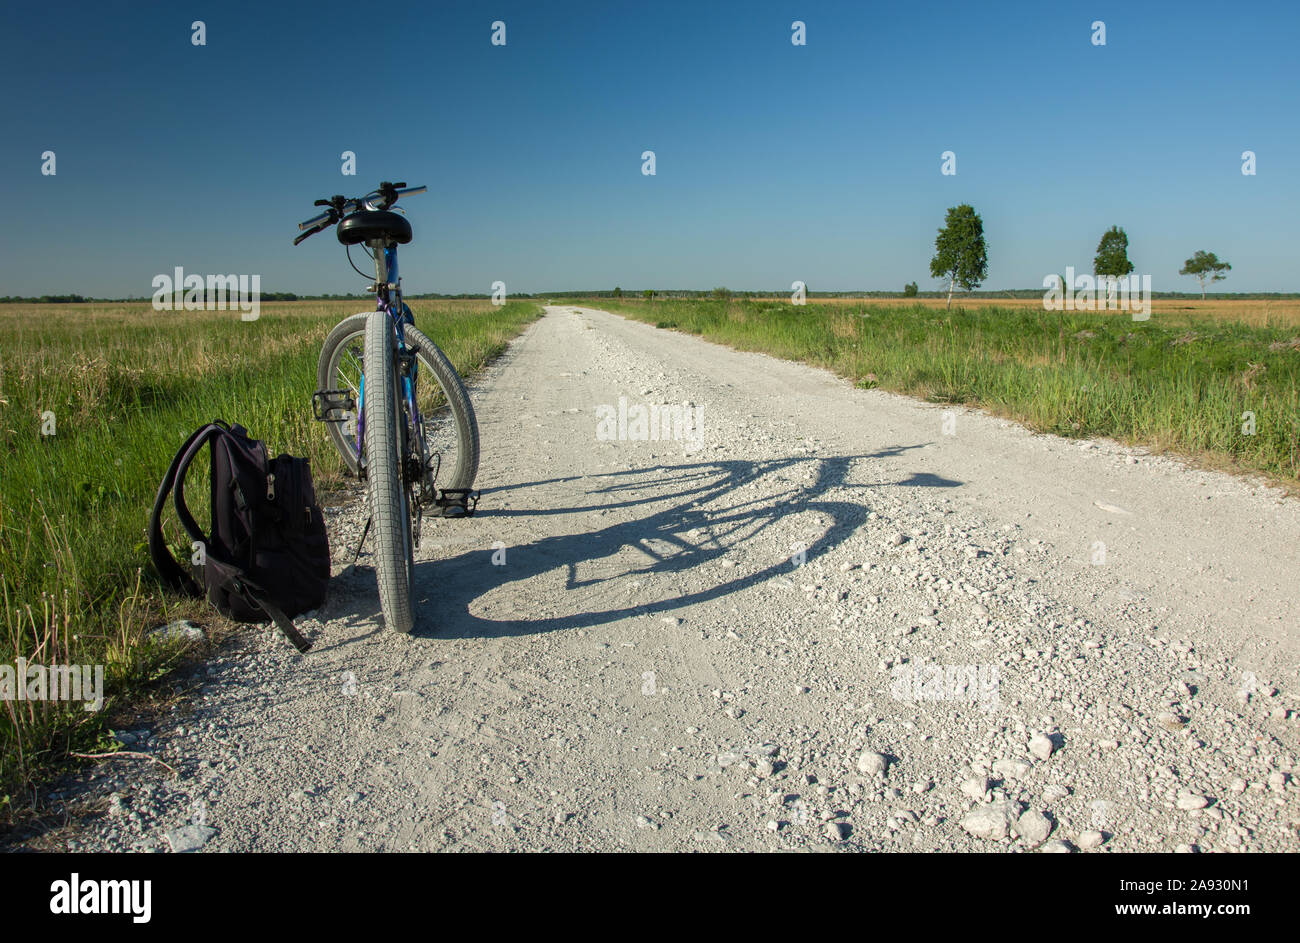 Bicicletta permanente e uno zaino su una strada di ghiaia all'orizzonte, prato verde, alberi e cielo blu senza nuvole Foto Stock